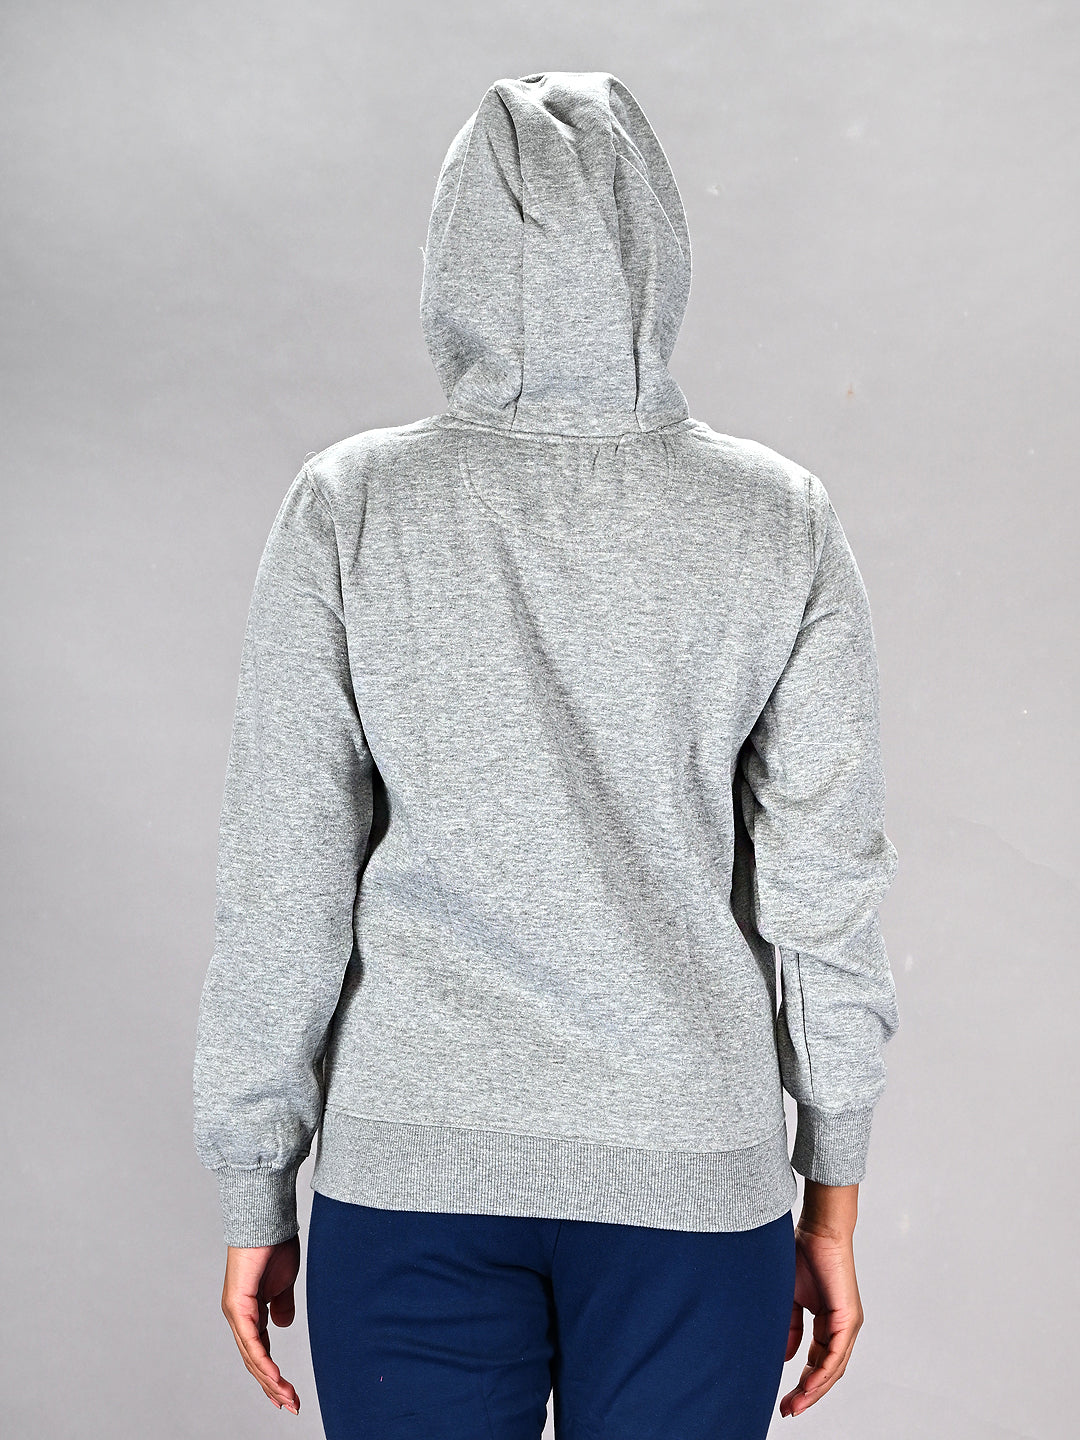 Grey Printed Round Neck Hoodie Sweatshirt #455